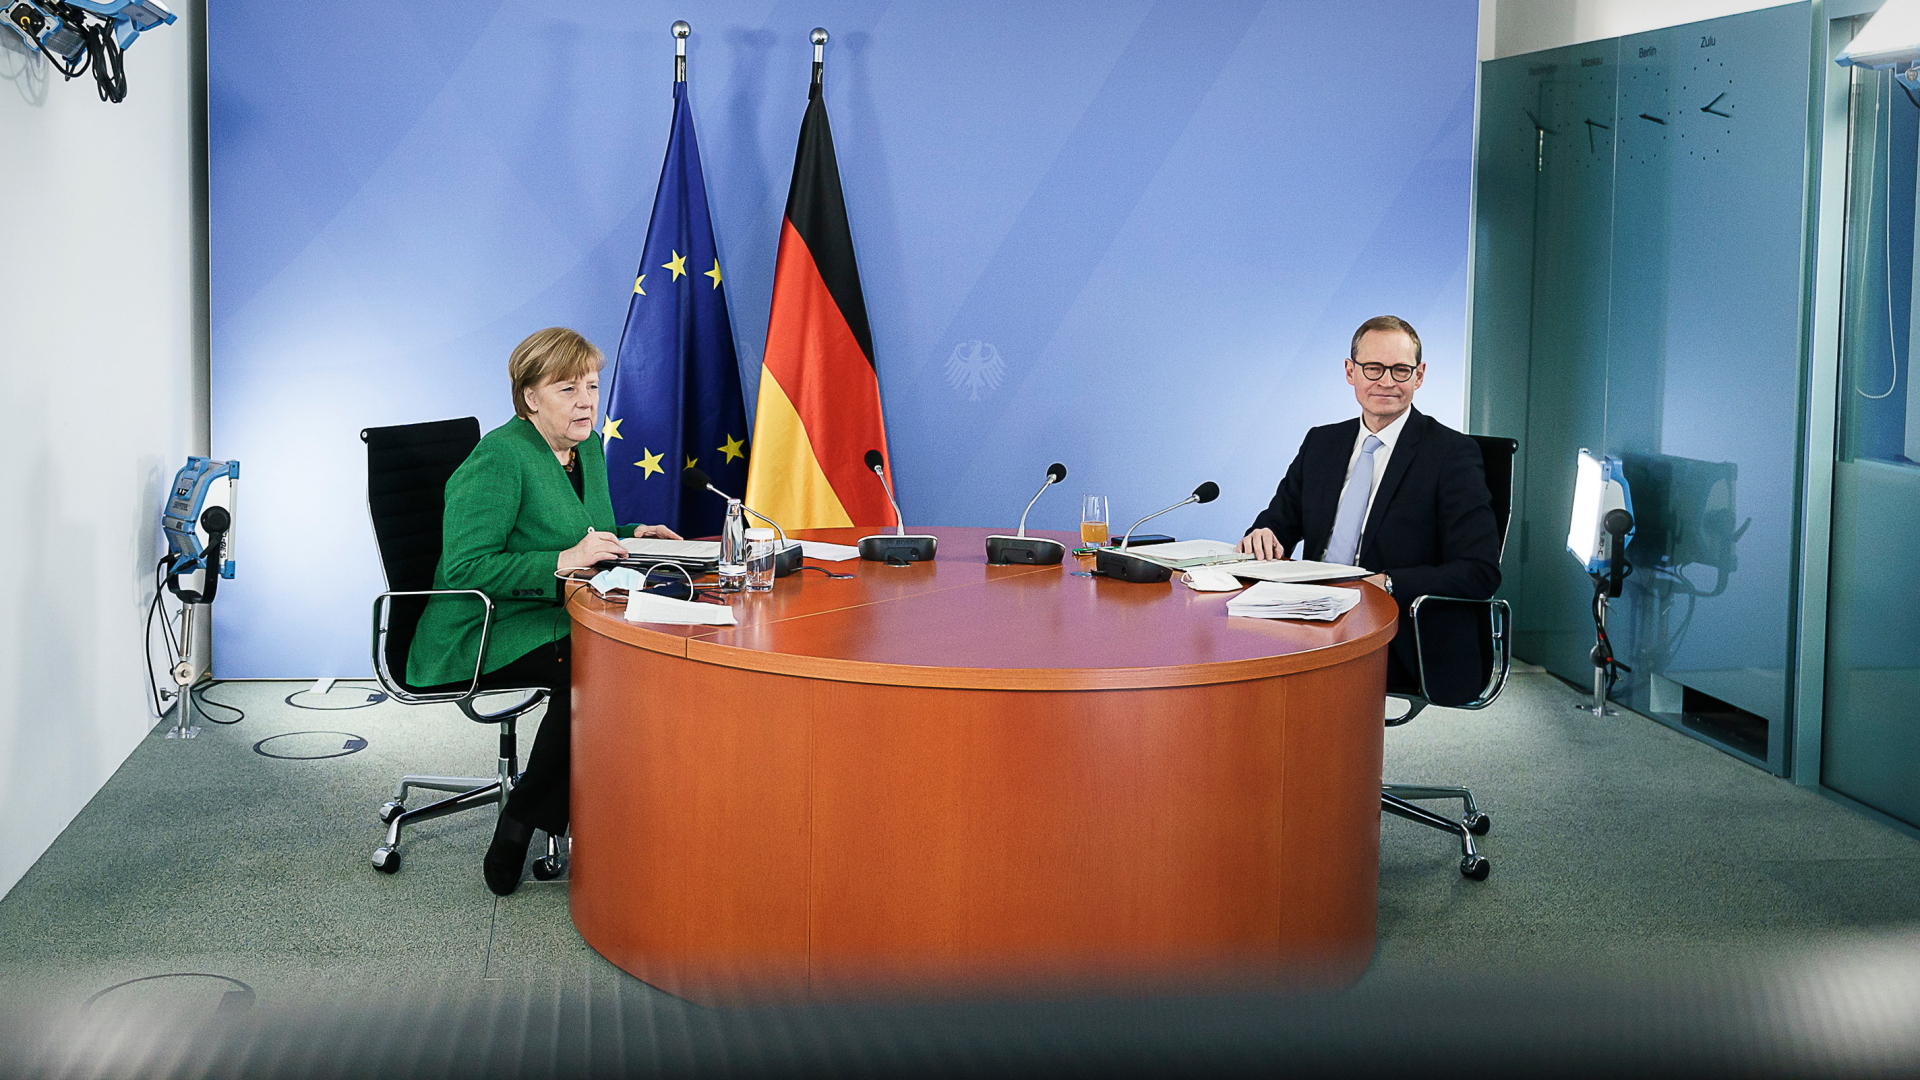 Angela Merkel und Michael Müller bei den Bund-Länder-Beratungen | dpa